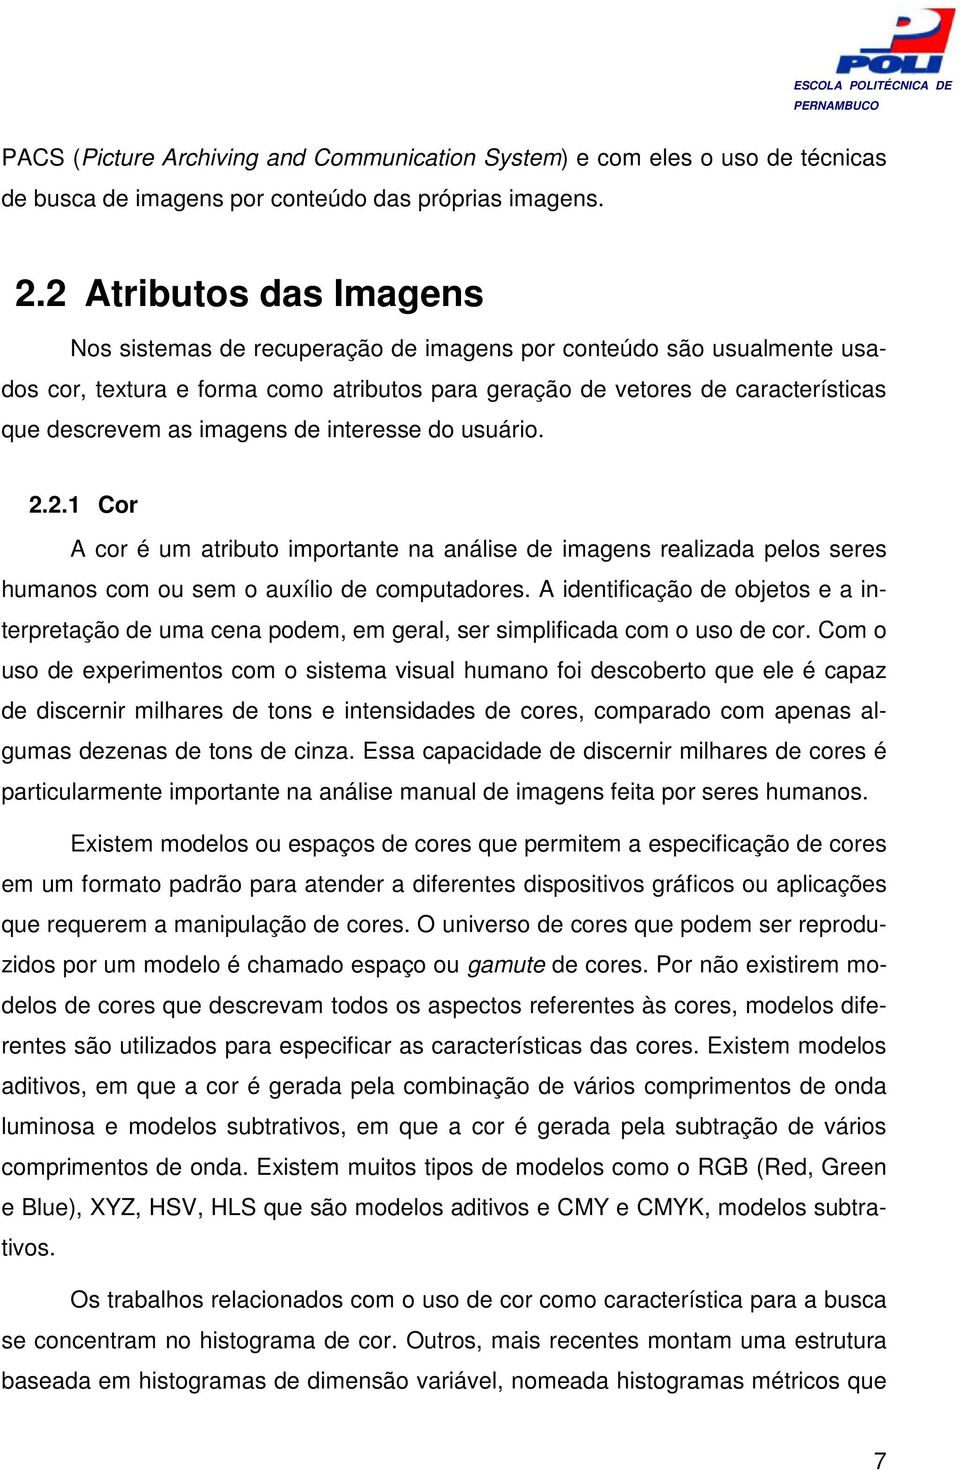 imagens de interesse do usuário. 2.2. Cor A cor é um atributo importante na análise de imagens realizada pelos seres humanos com ou sem o auxílio de computadores.